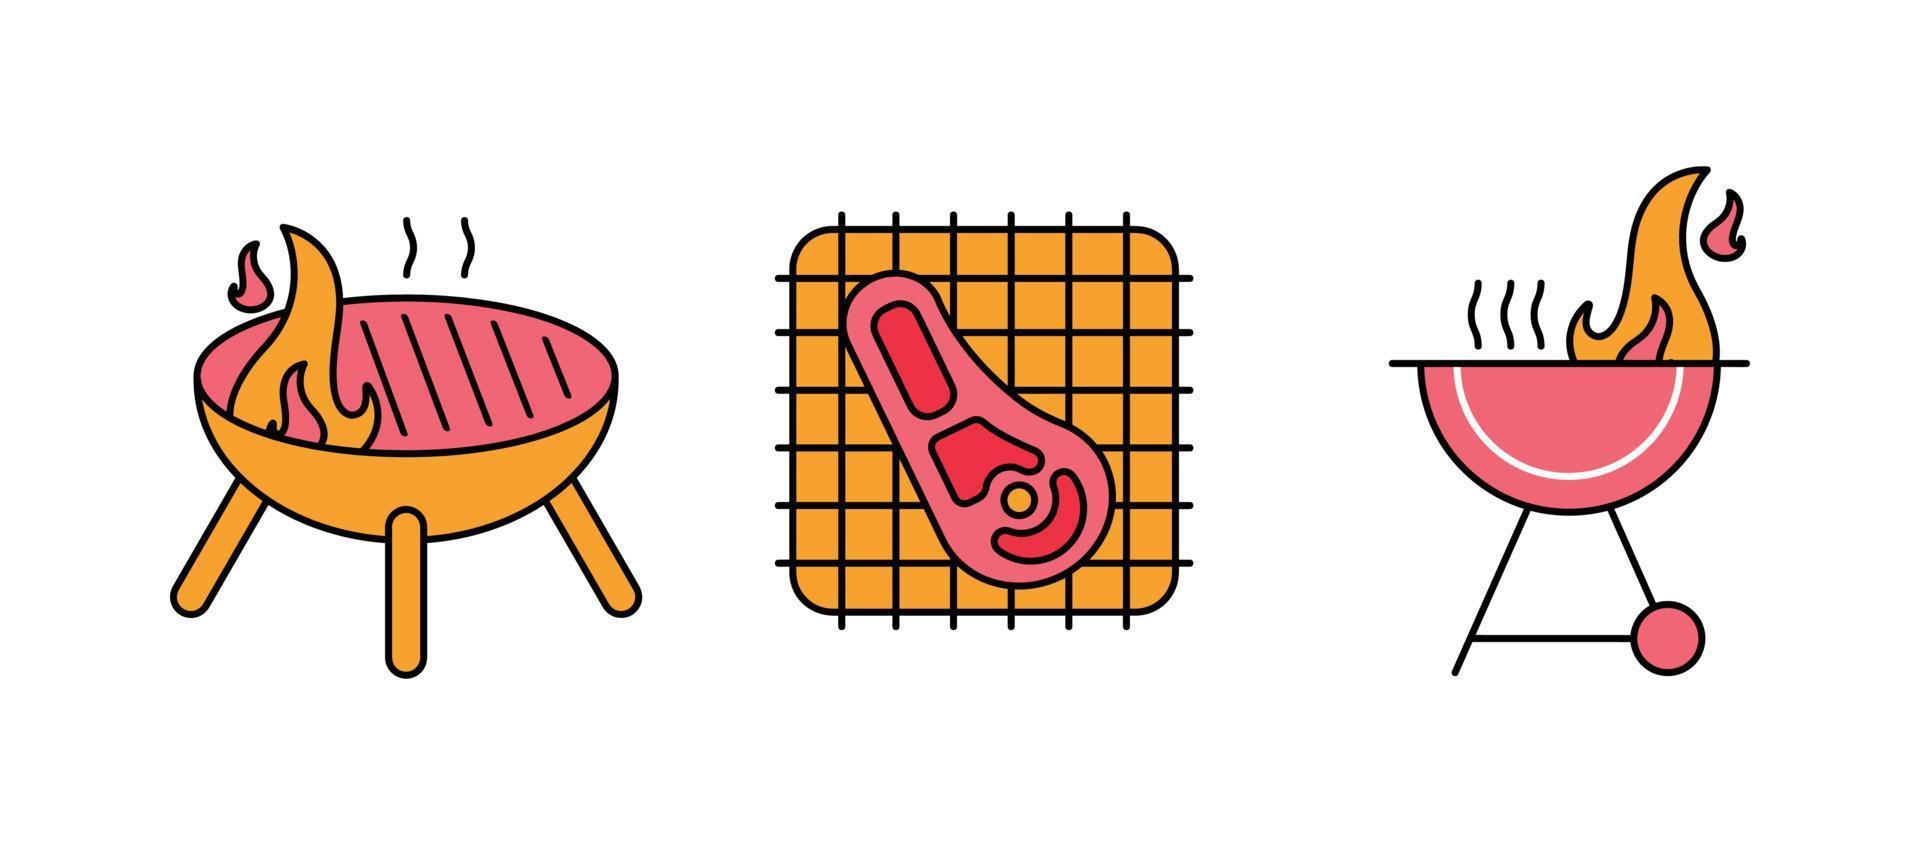 t os sur barbecue, jeu d'icônes de barbecue en flamme. barbecue. collecter. ces icônes contiennent des icônes de plats chauds. c'est un ensemble de dessins colorés. vecteur